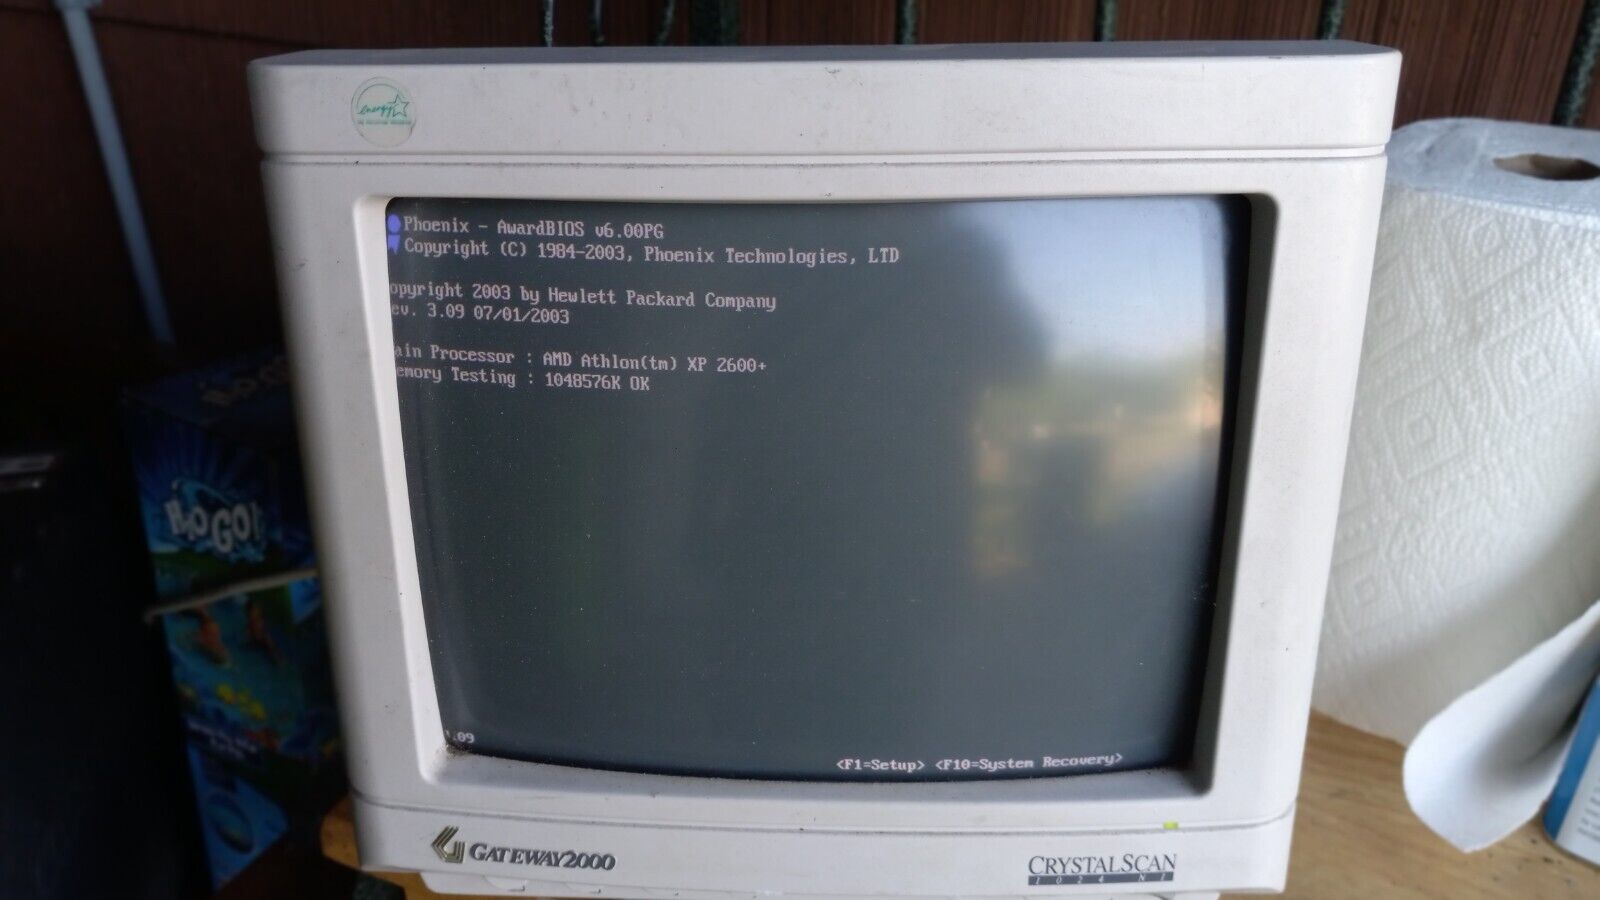 Vintage Gateway 2000 CS1024NI2 CRT Monitor-Retro Gaming Display *WORKING*